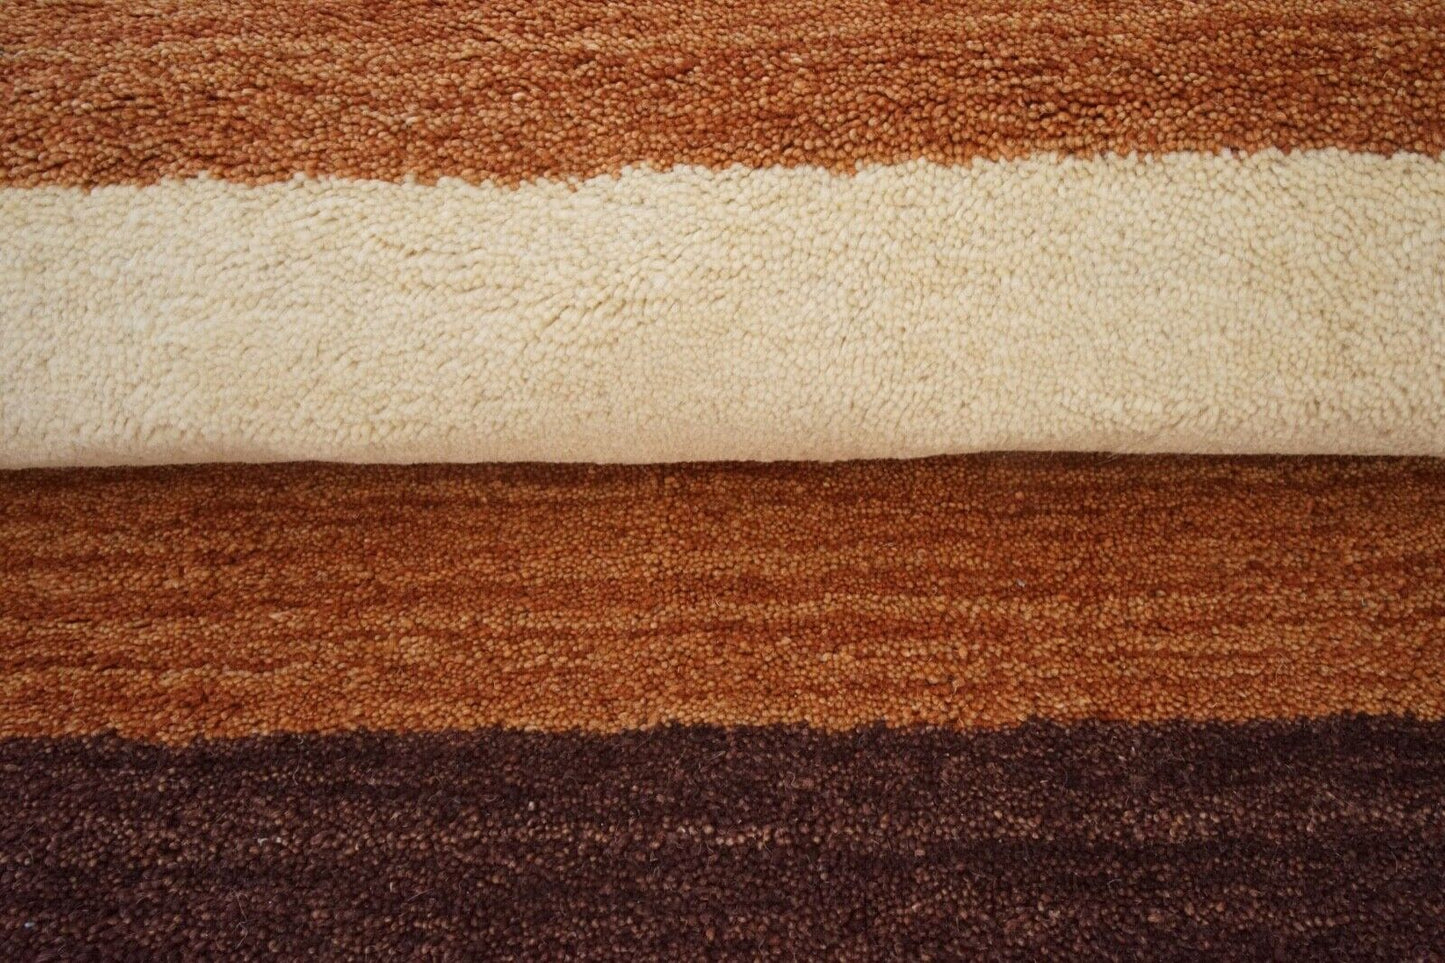 140X200 cm Teppich 100% Wolle Orange Beige Braun Orient Handgetuftet HT593